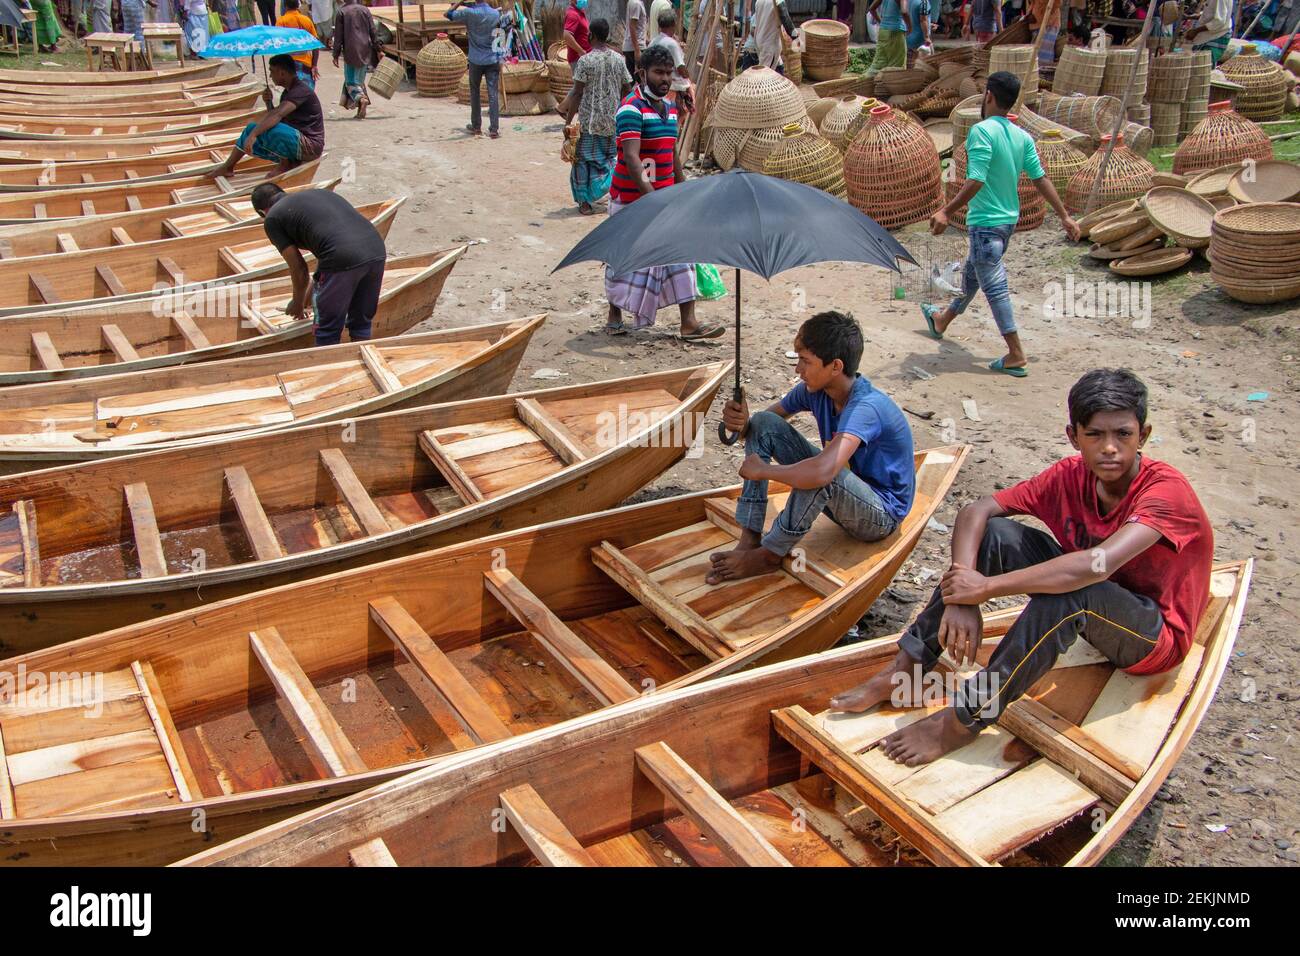 Piccole barche di legno sono allineate per la vendita in un mercato delle  barche, come la vendita di questa tradizionale barca di legno è trafficata  durante il monsone per soddisfare la domanda